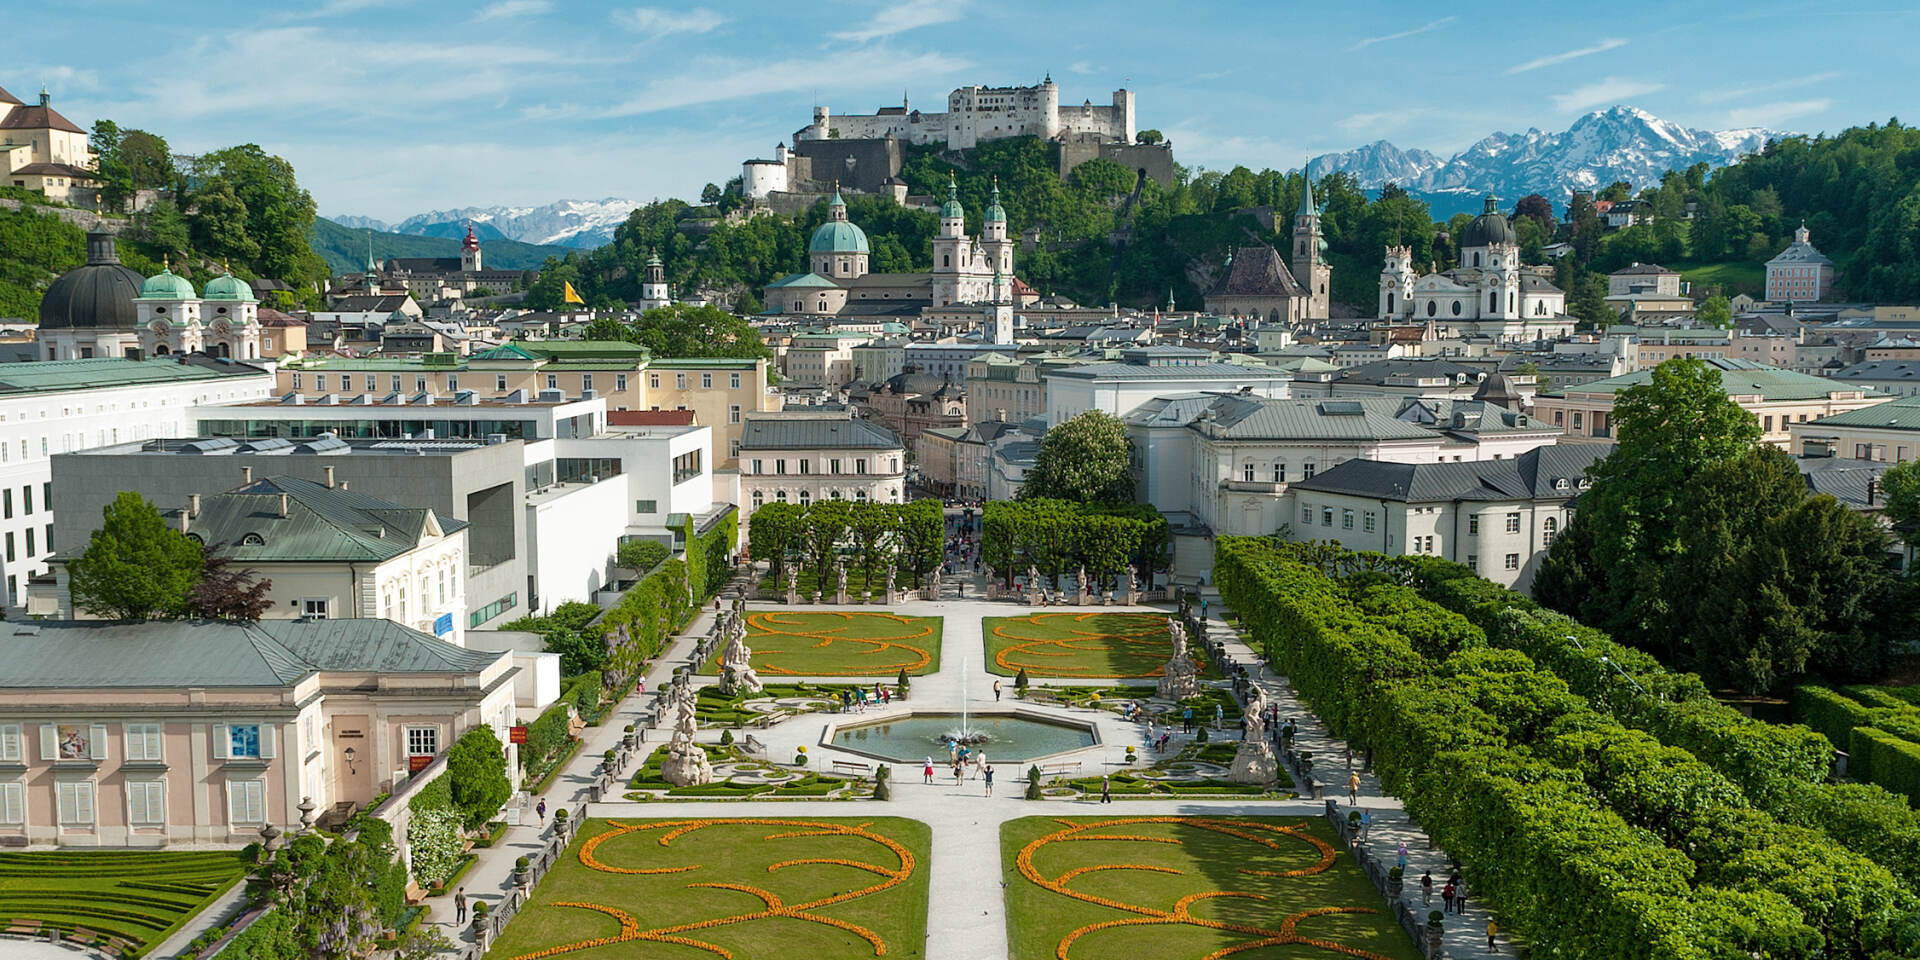 Mirabell Gardens © Tourismus Salzburg GmbH